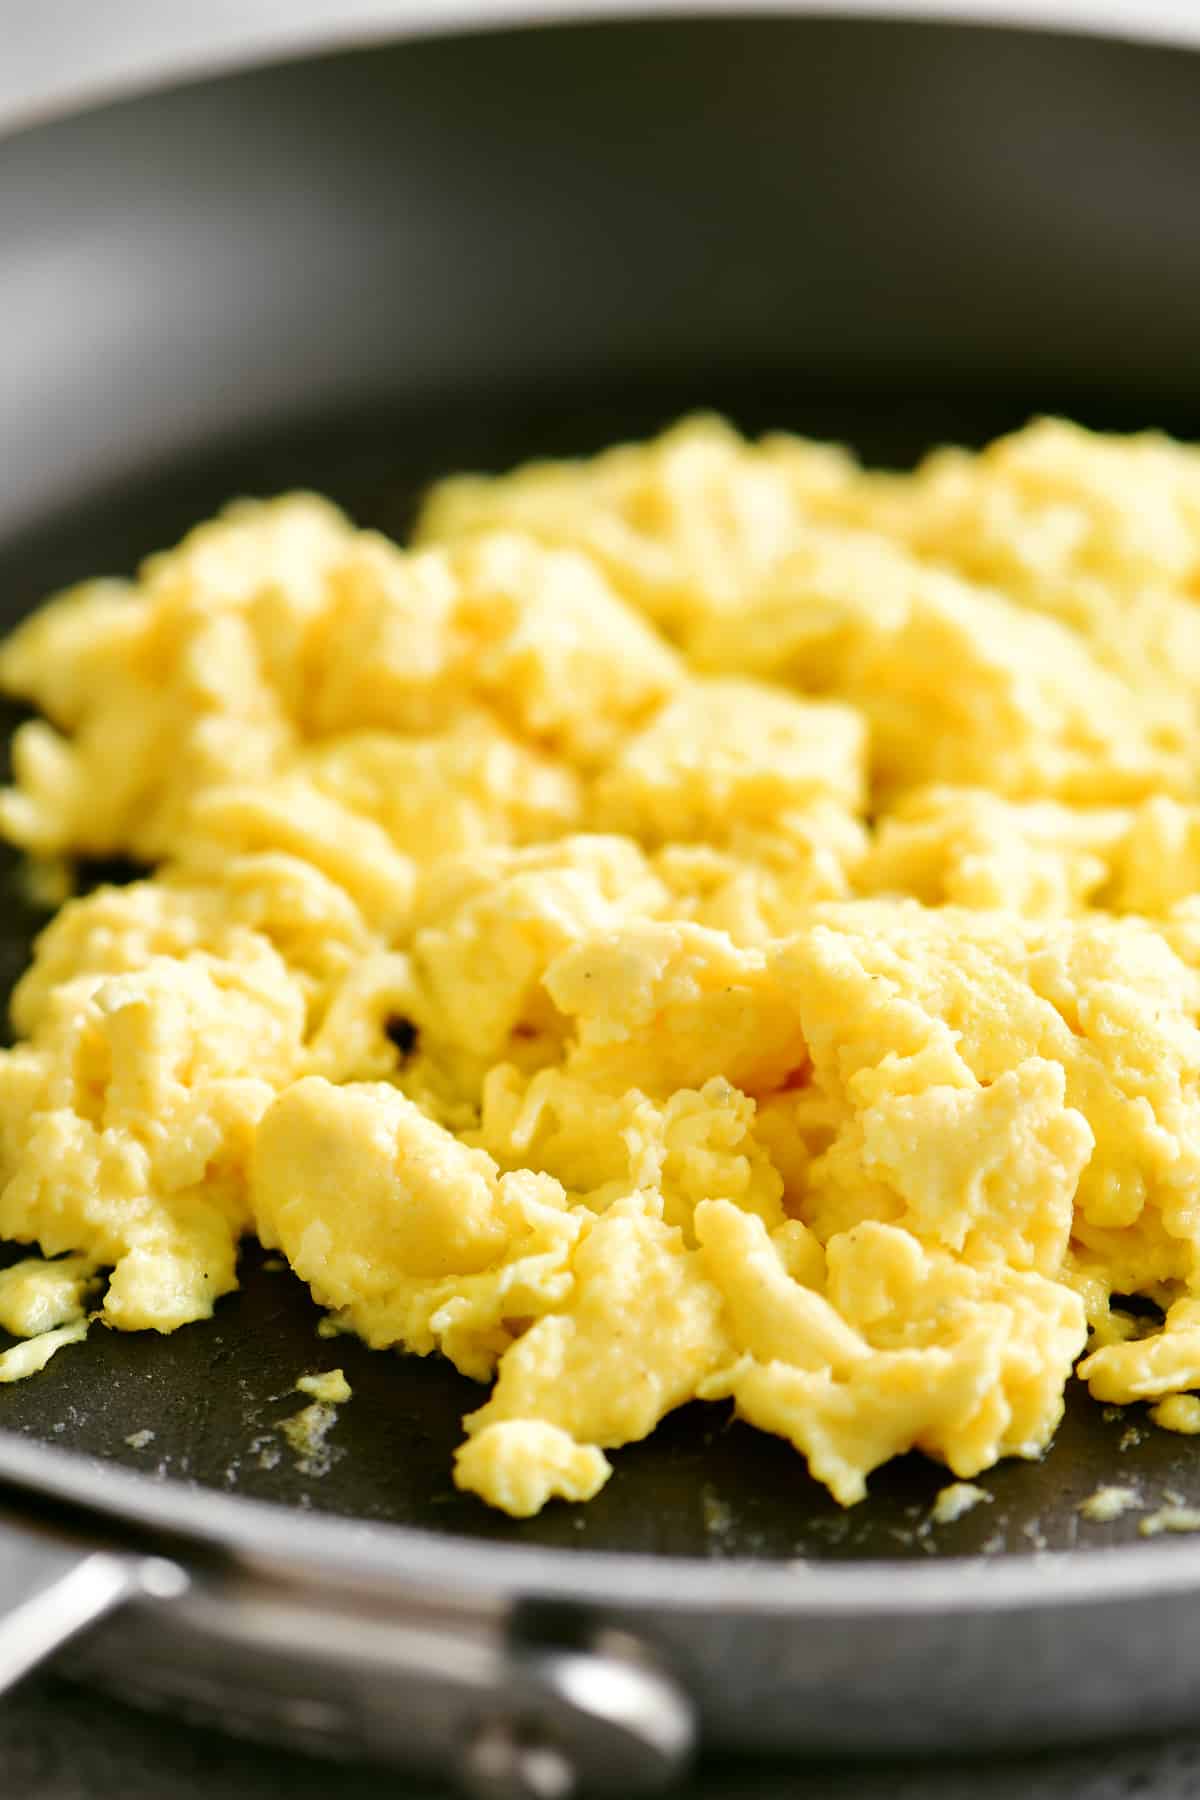 How To Make Scrambled Eggs - The Gunny Sack